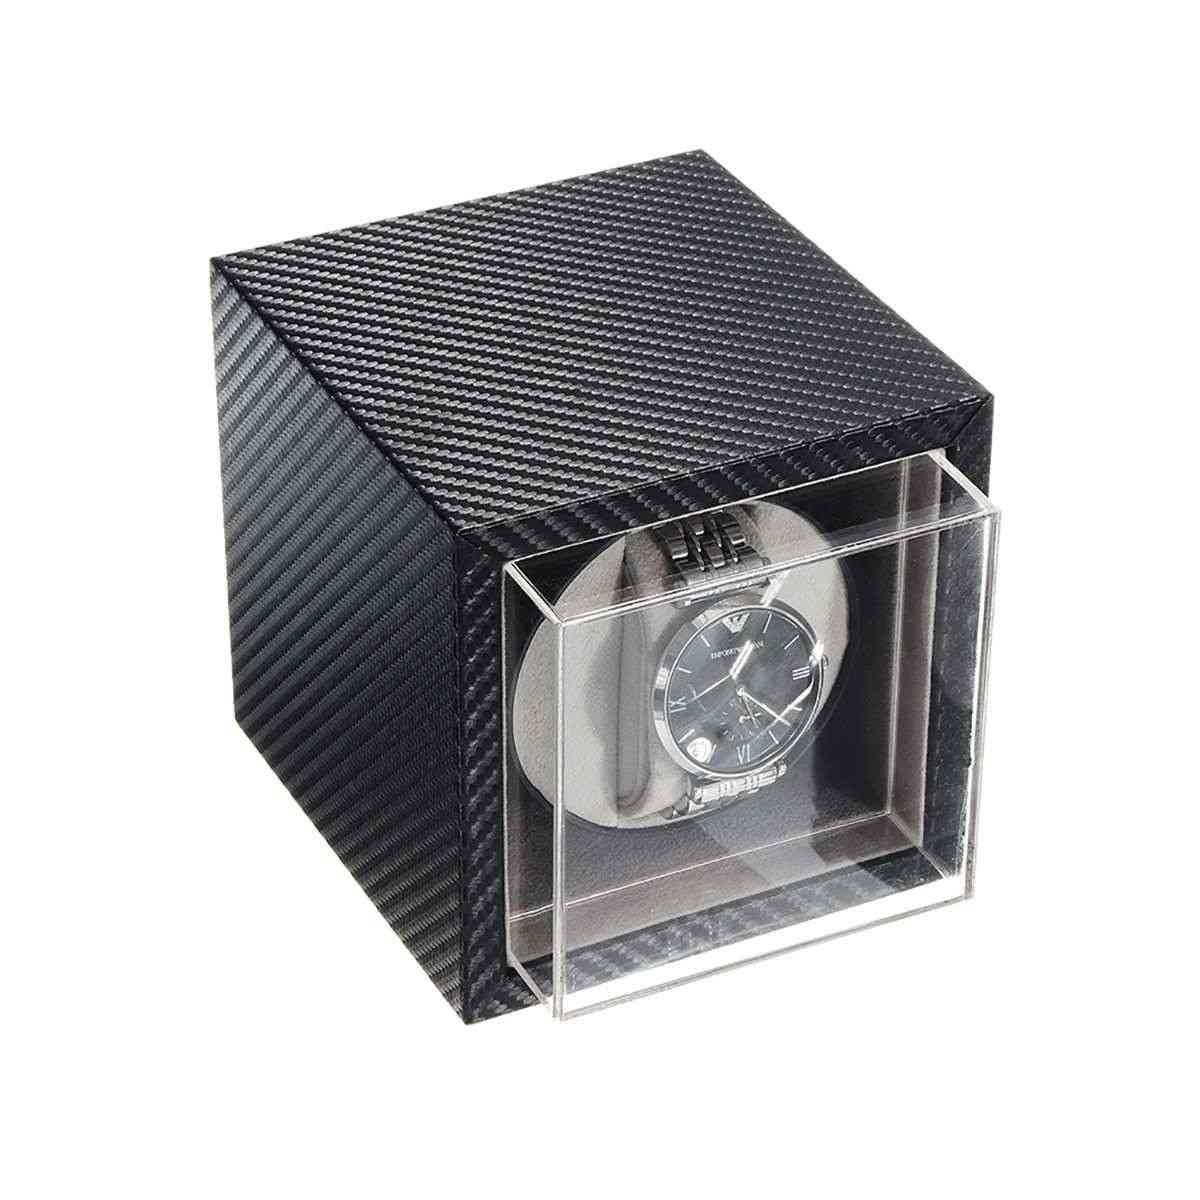 Automatski namotač satova, prigušivač zvuka motora, kutija satova od karbonskih vlakana